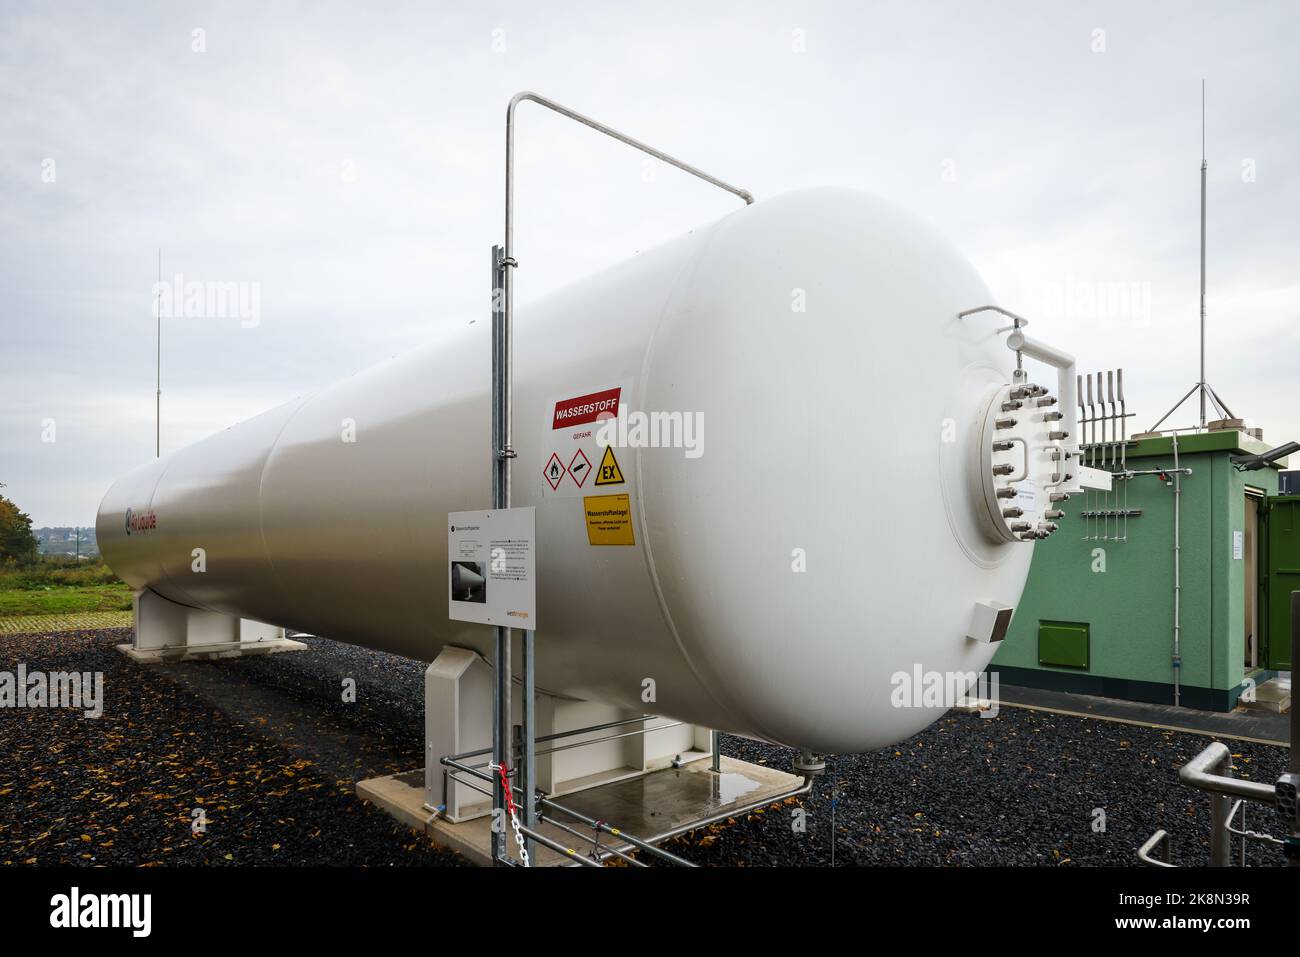 Holzwickede, Renania settentrionale-Vestfalia, Germania - rete di gas naturale per idrogeno puro, progetto idrogeno H2HoWi, operatore della rete di distribuzione Westn Foto Stock